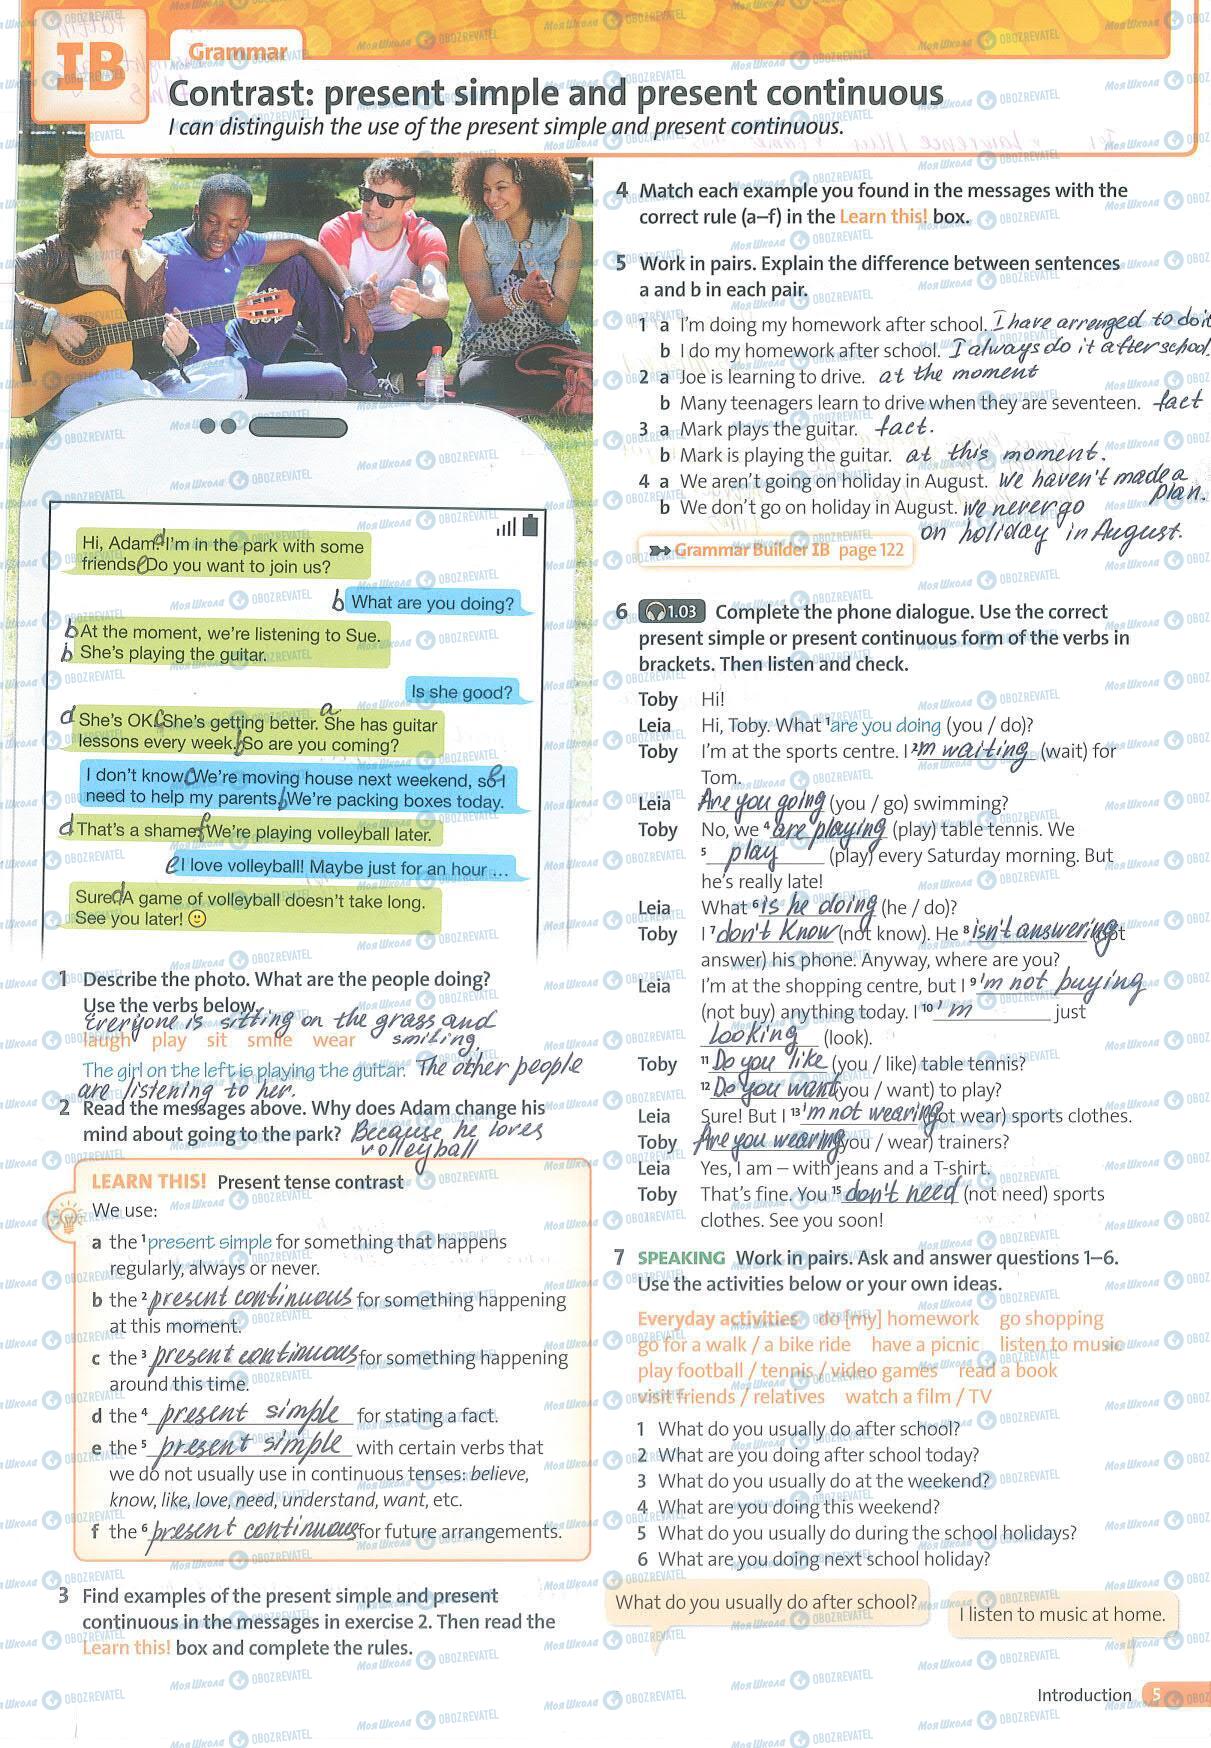 ГДЗ Англійська мова 7 клас сторінка 5